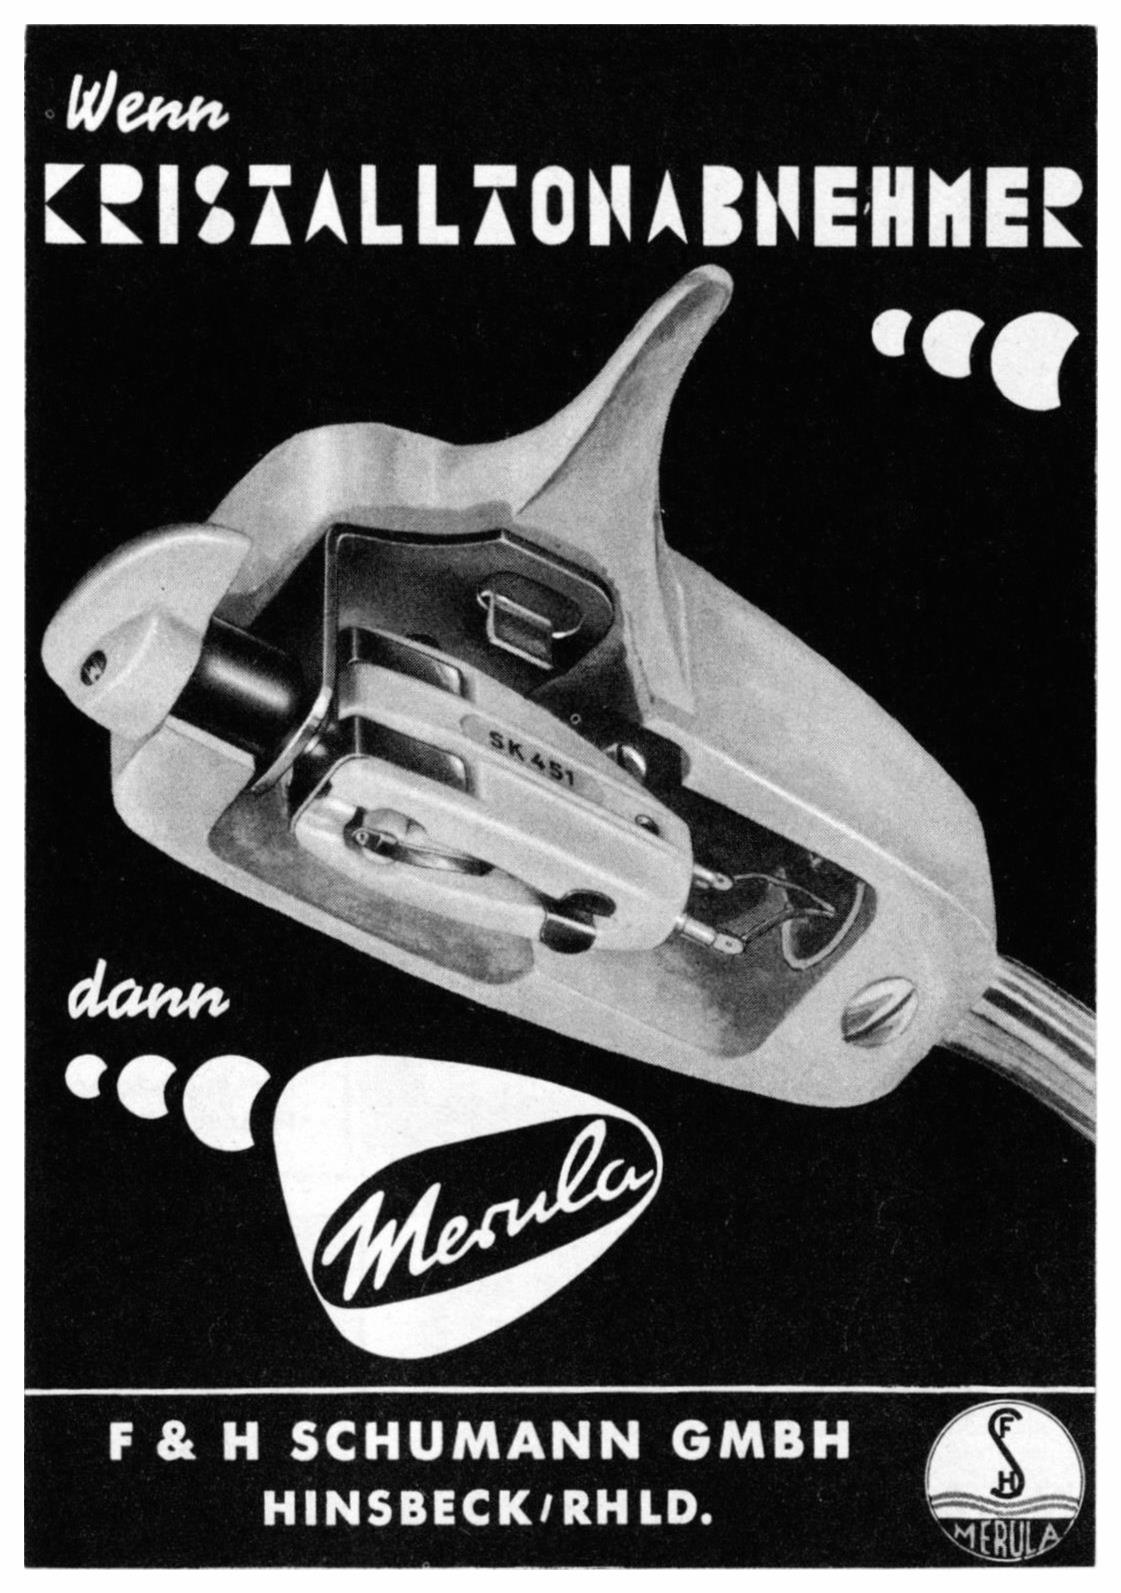 Merula 1957 6.jpg